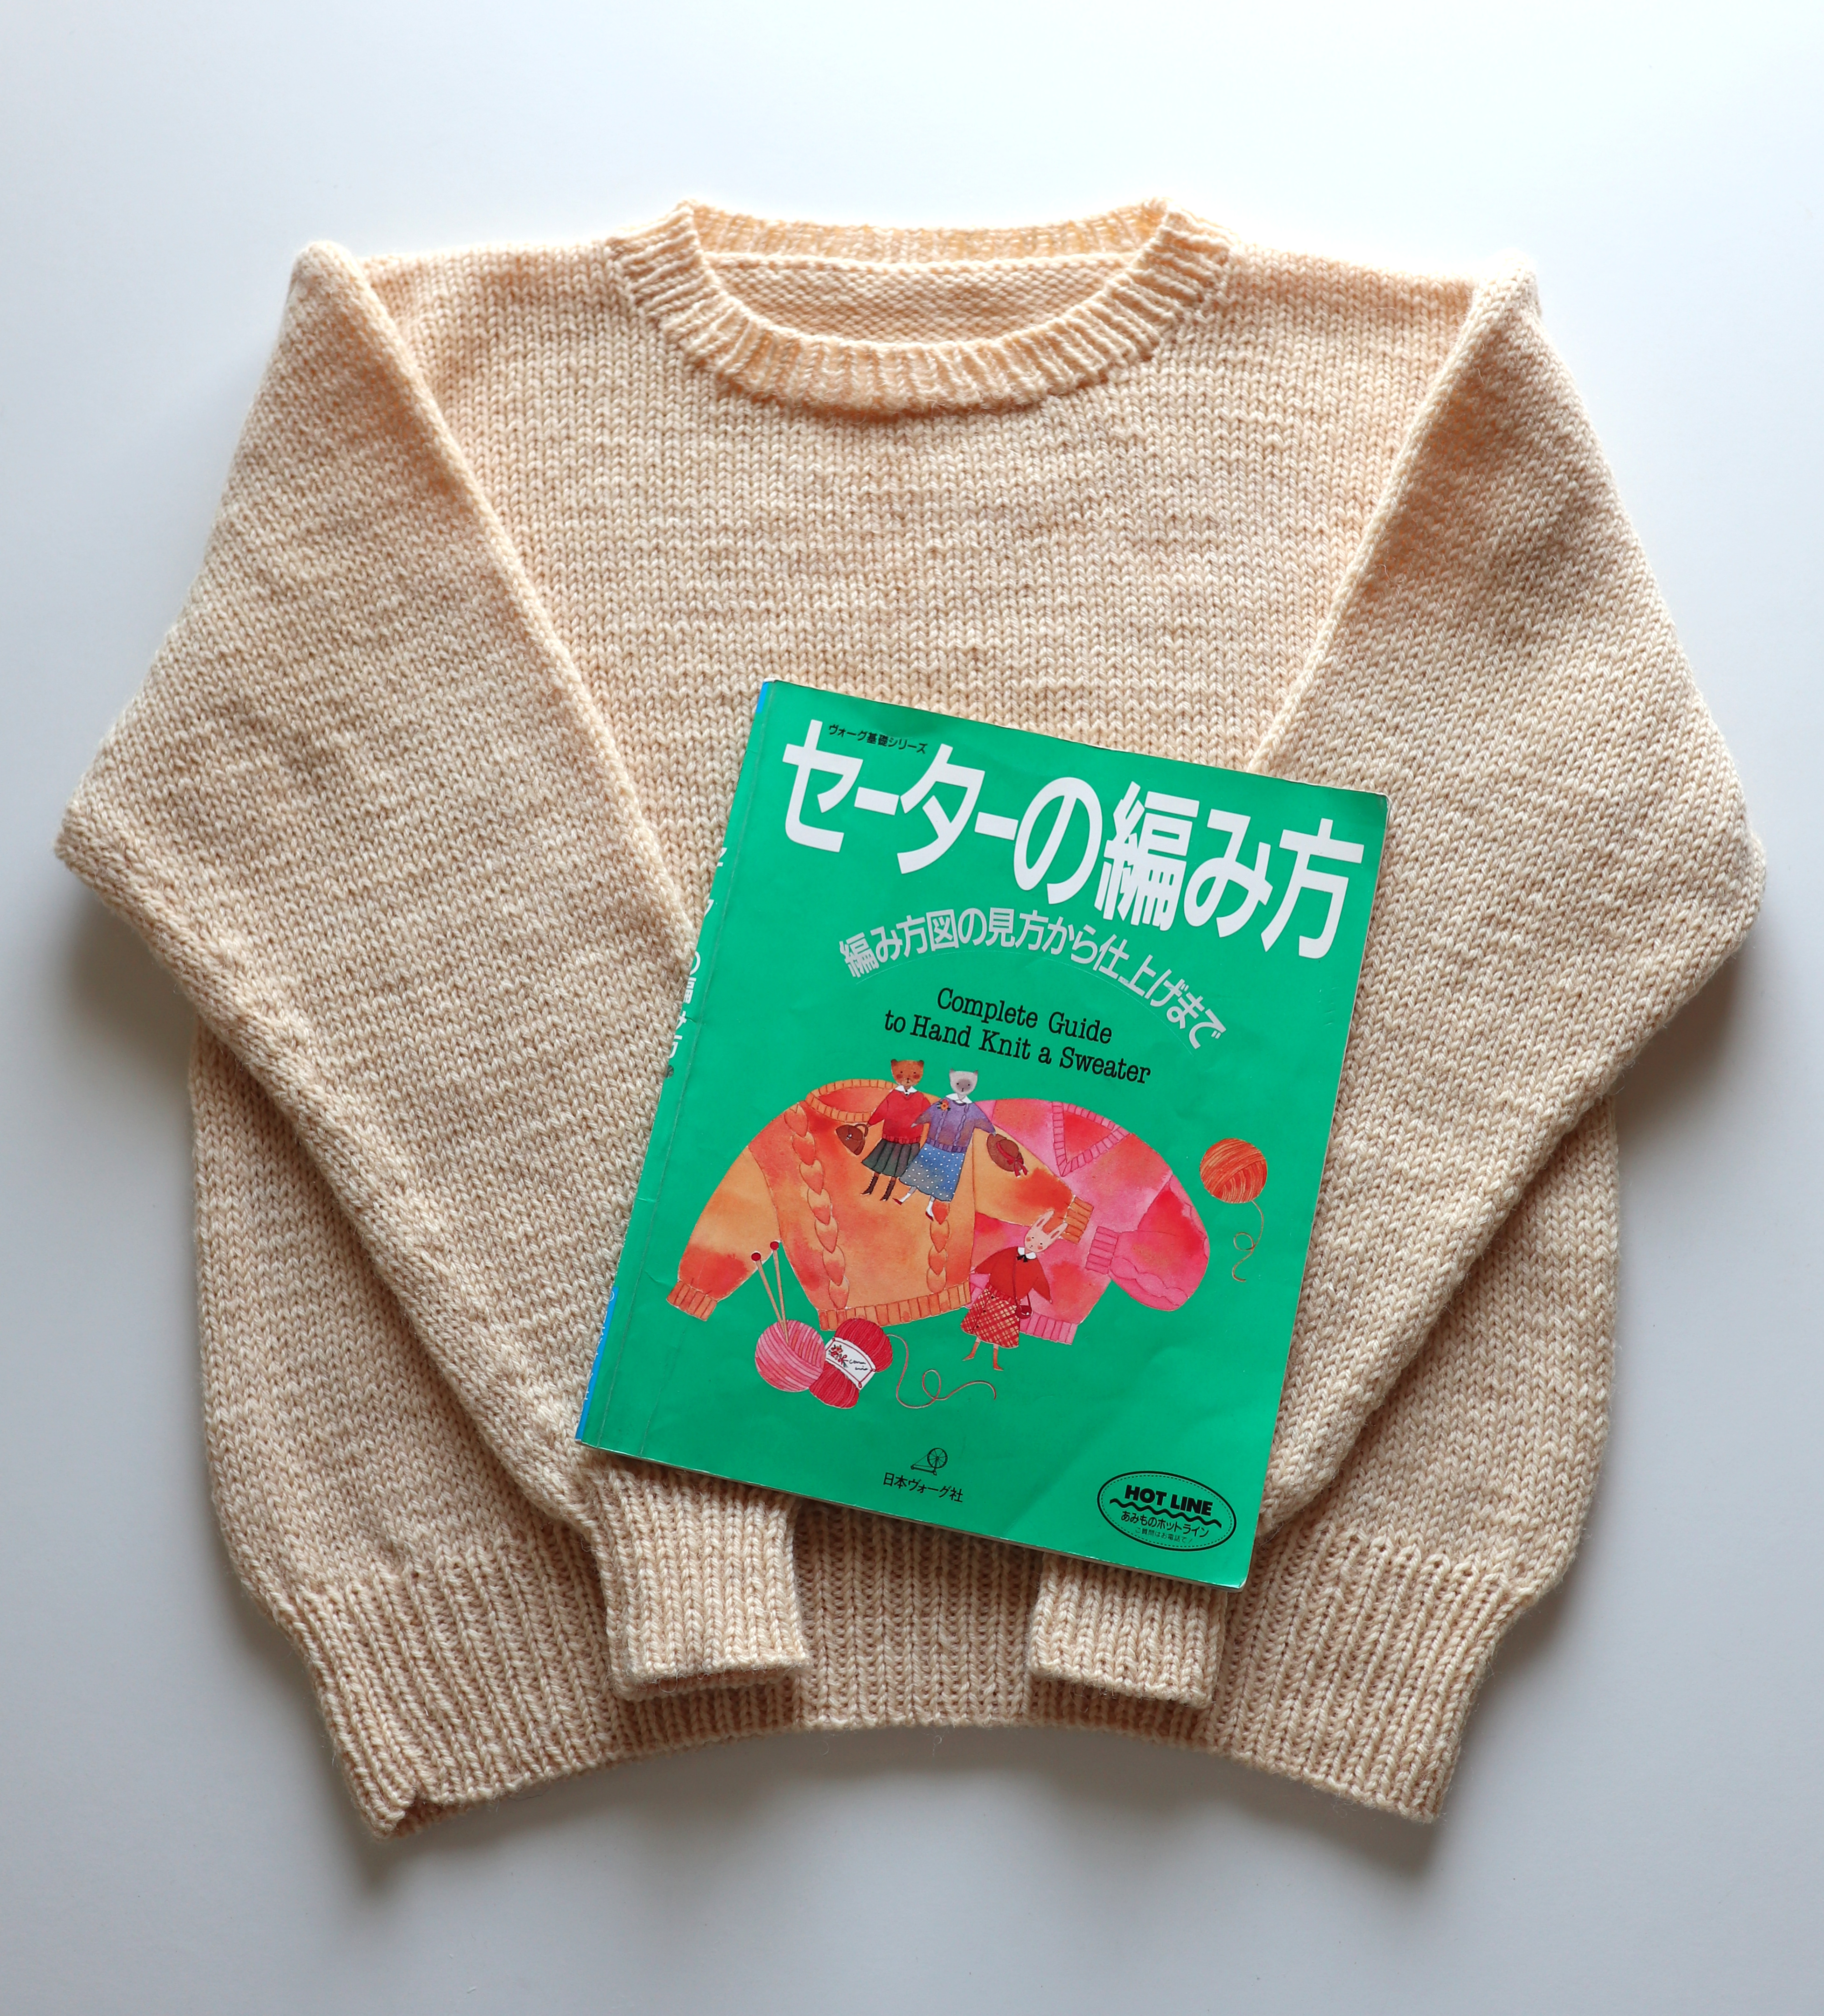 セーターの編み方』と言う本で、セーターの編み方を一からおさらいしました – My Cup of Tea